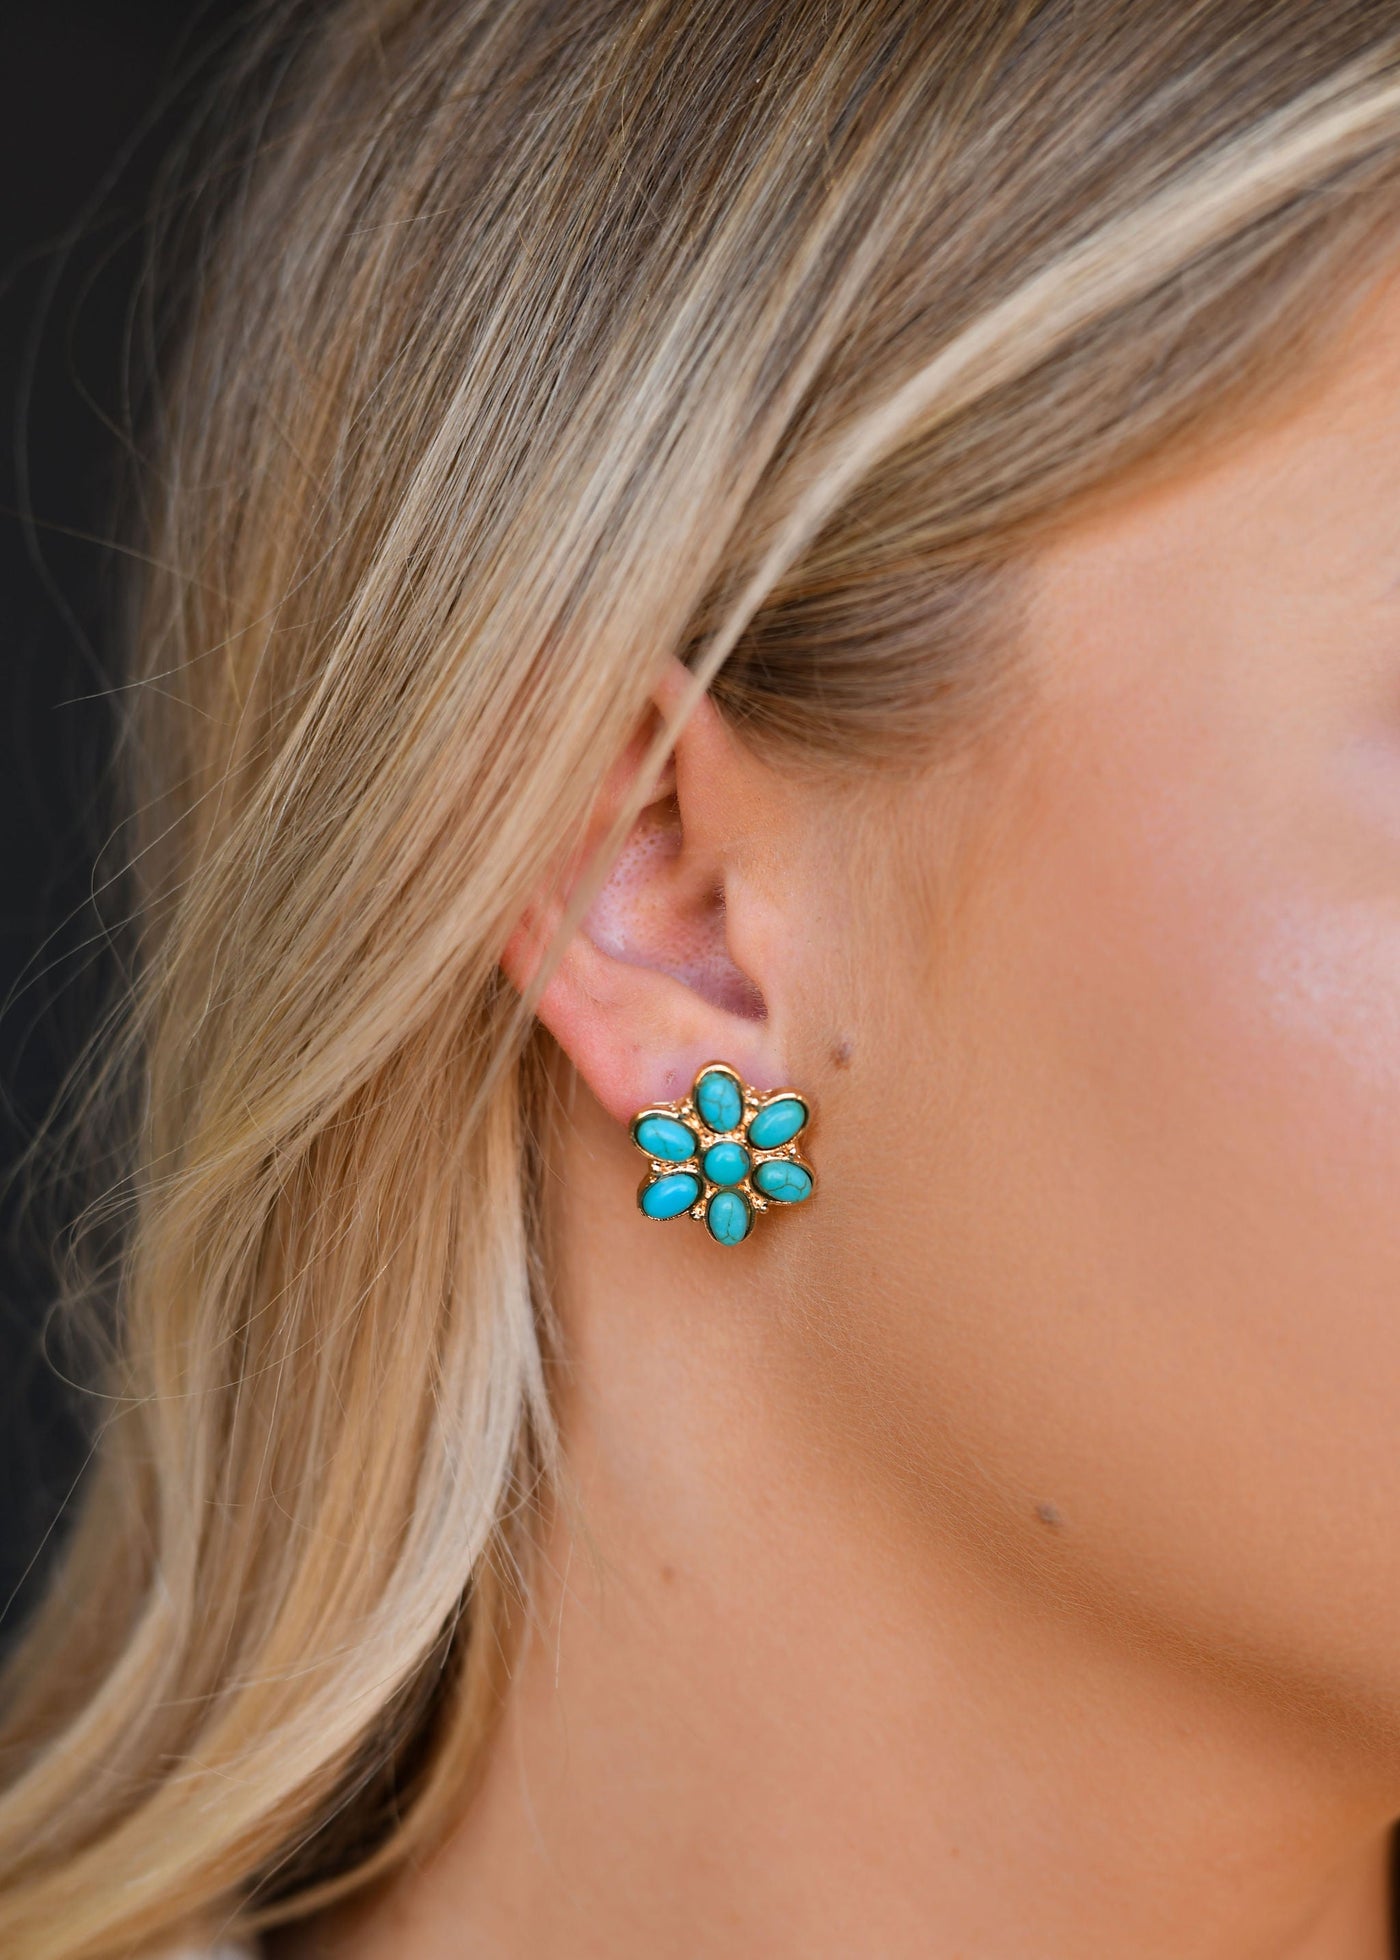 The Heather Flower Earrings